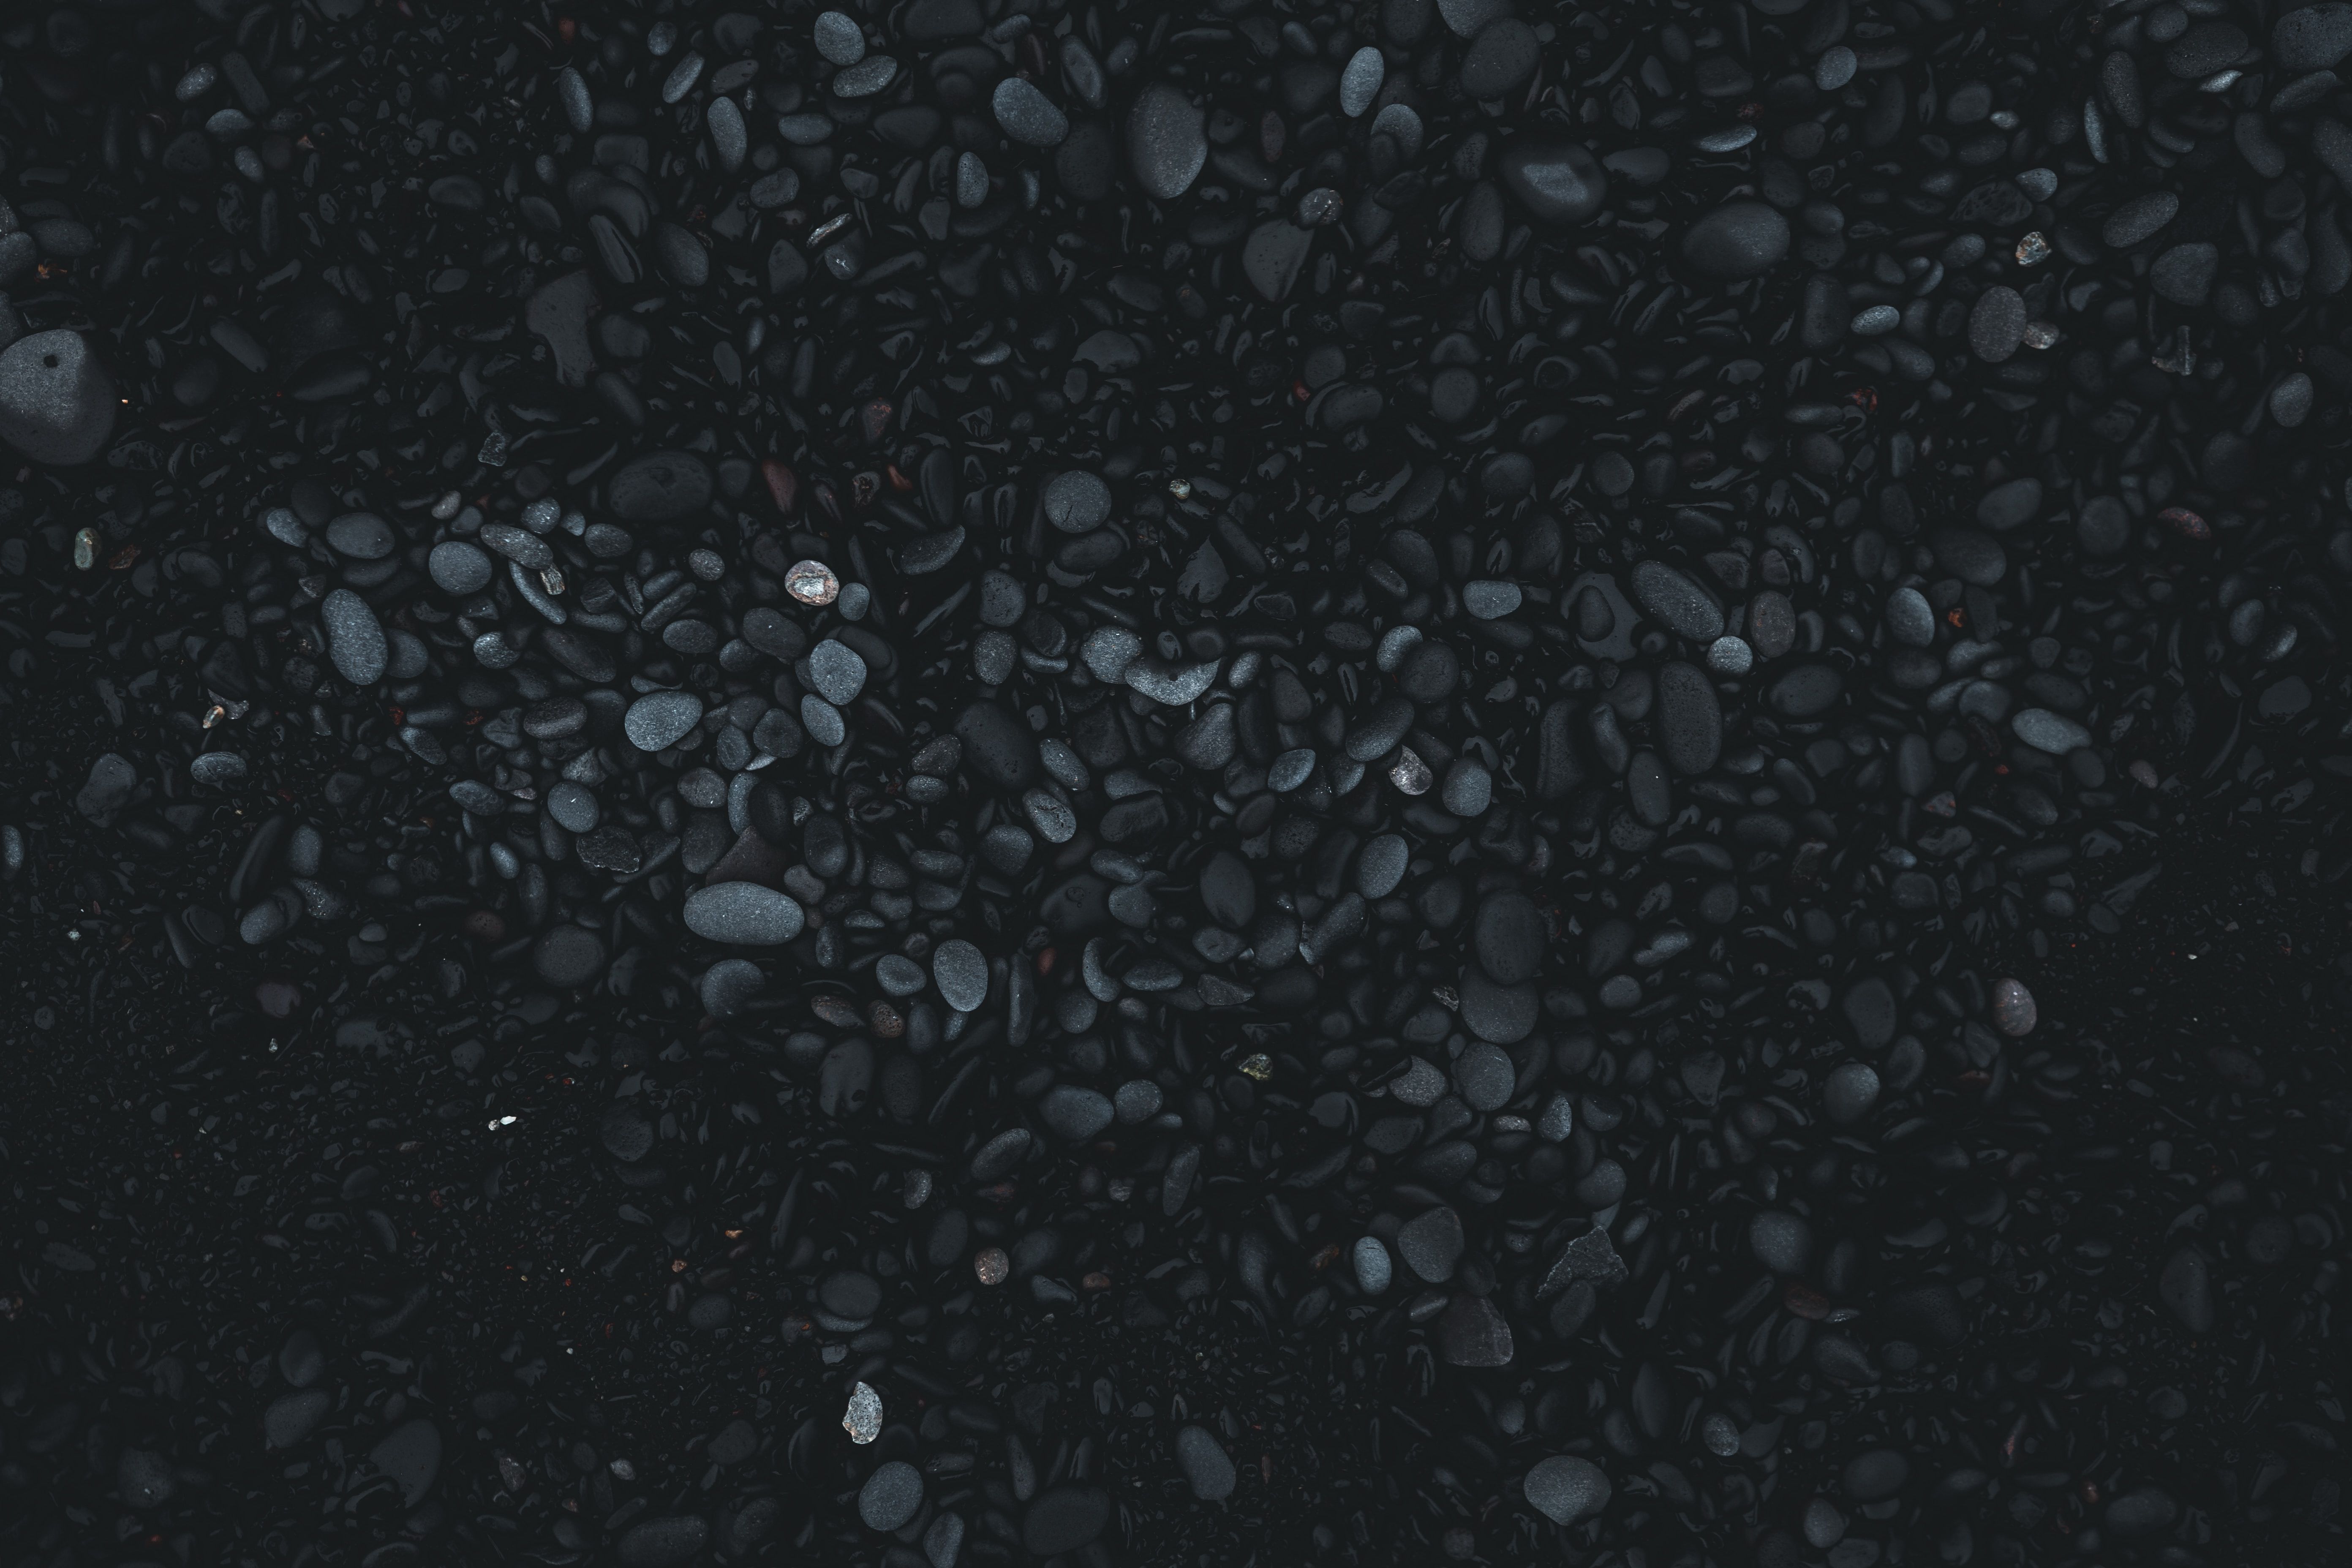  Schwarze Hintergrundbild 5568x3712. Kostenlose Hintergrundbilder Schwarze Und Weiße Steine Auf Dem Boden, Bilder Für Ihren Desktop Und Fotos